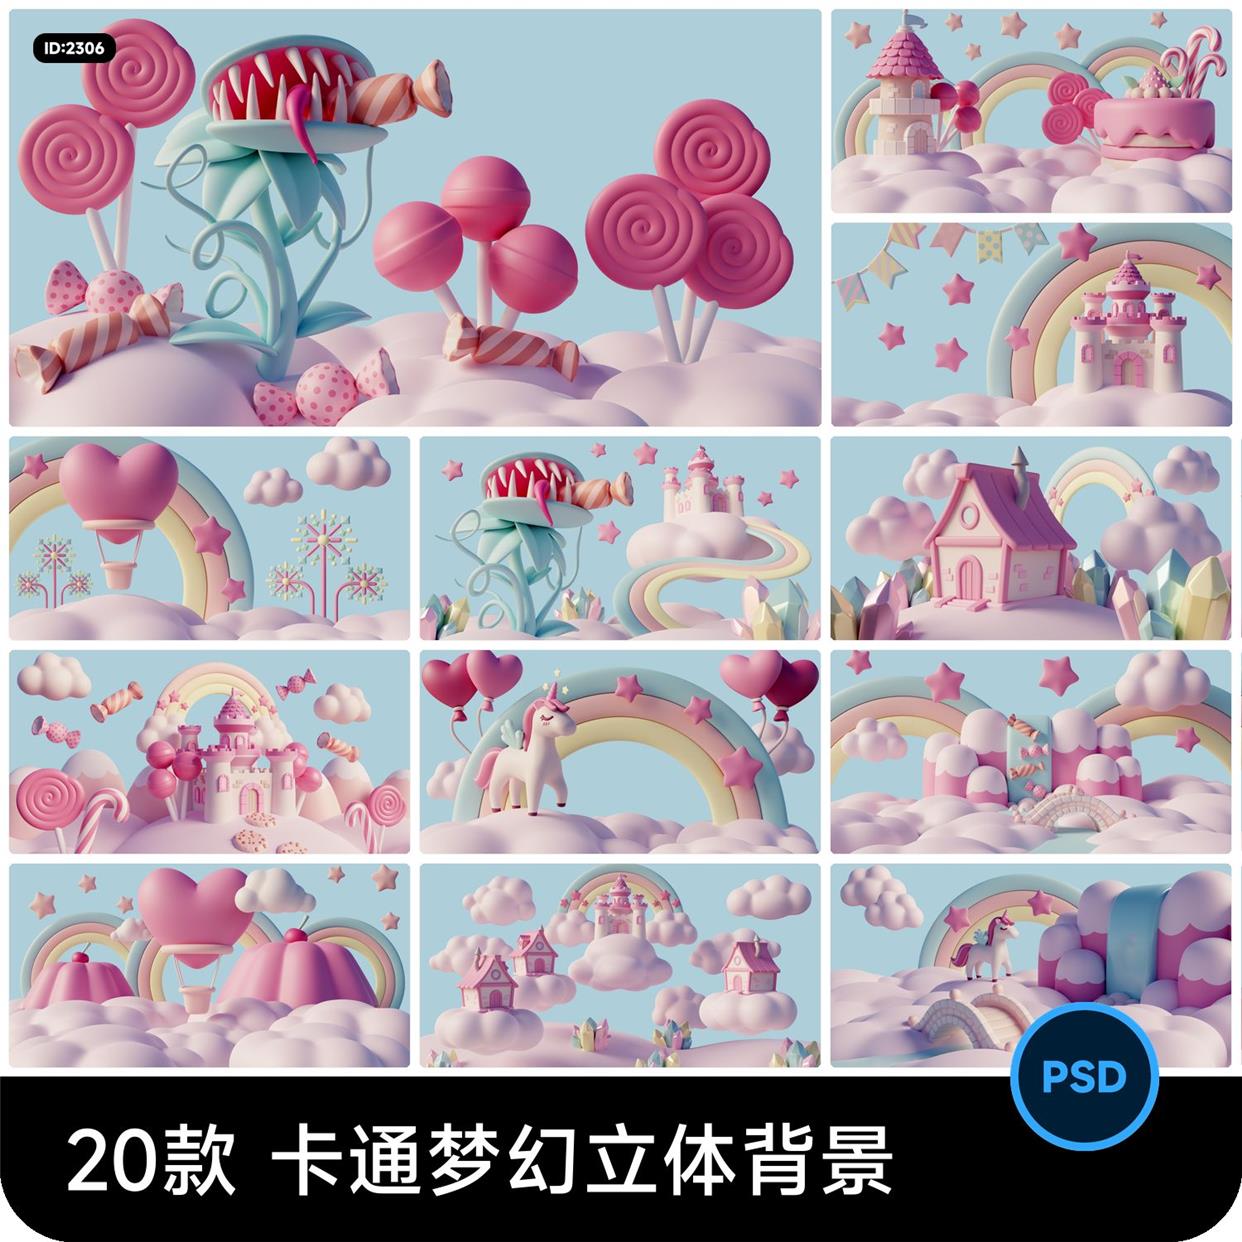 卡通梦幻3D立体云朵彩虹城堡爱心糖果背景图片psd设计素材模板